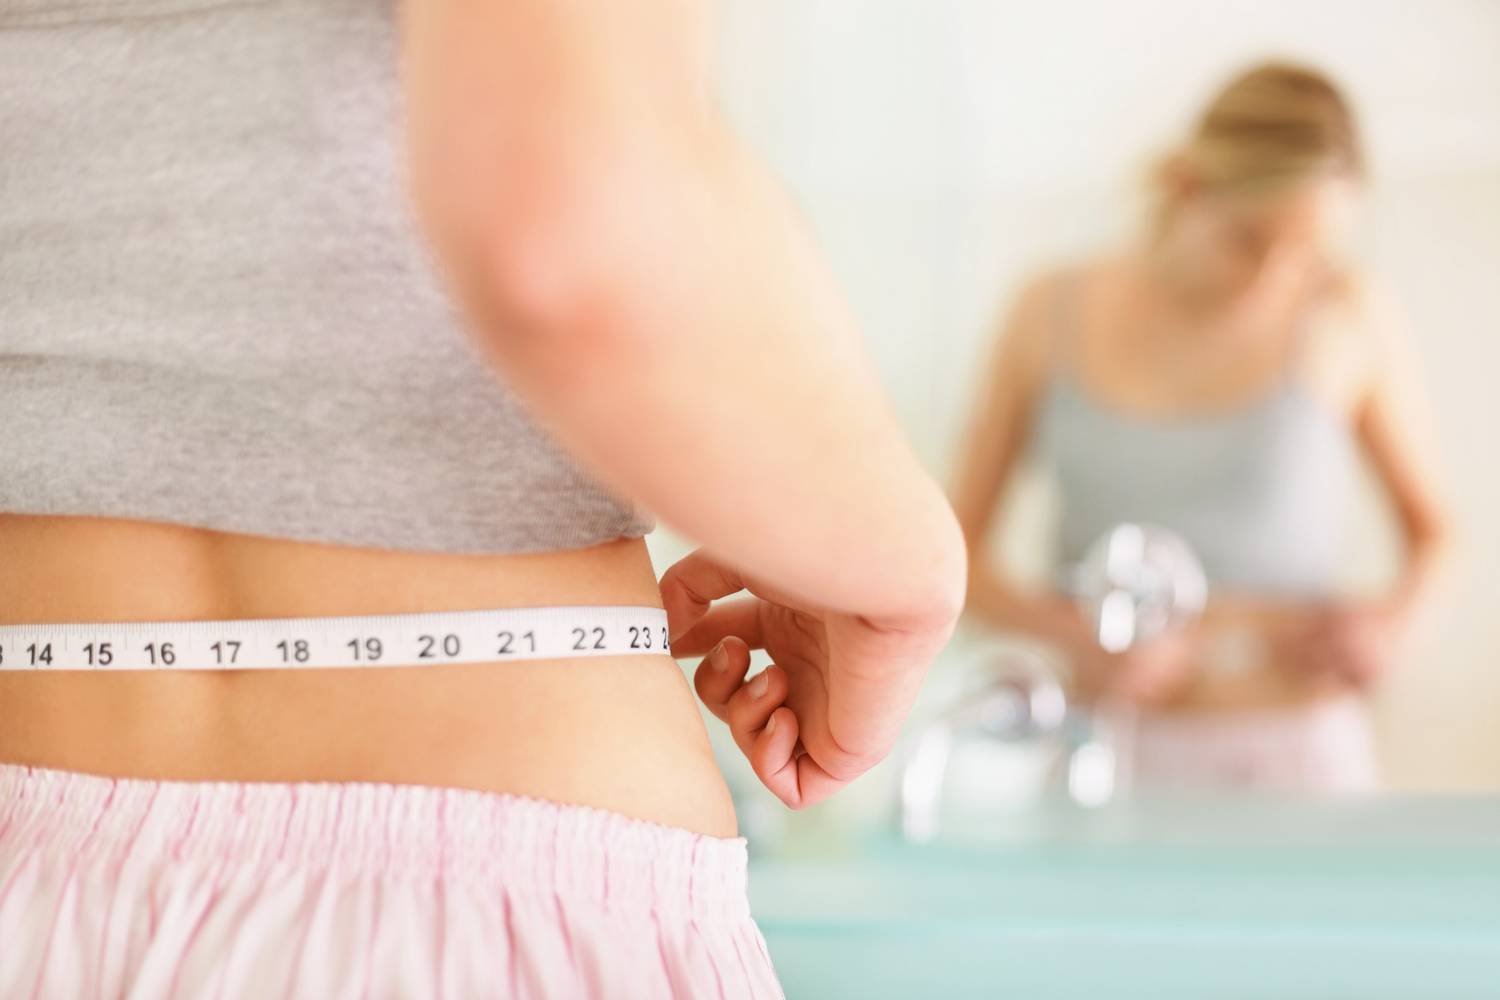 Befolyásolja-e a testsúlycsökkenés a vérnyomást?